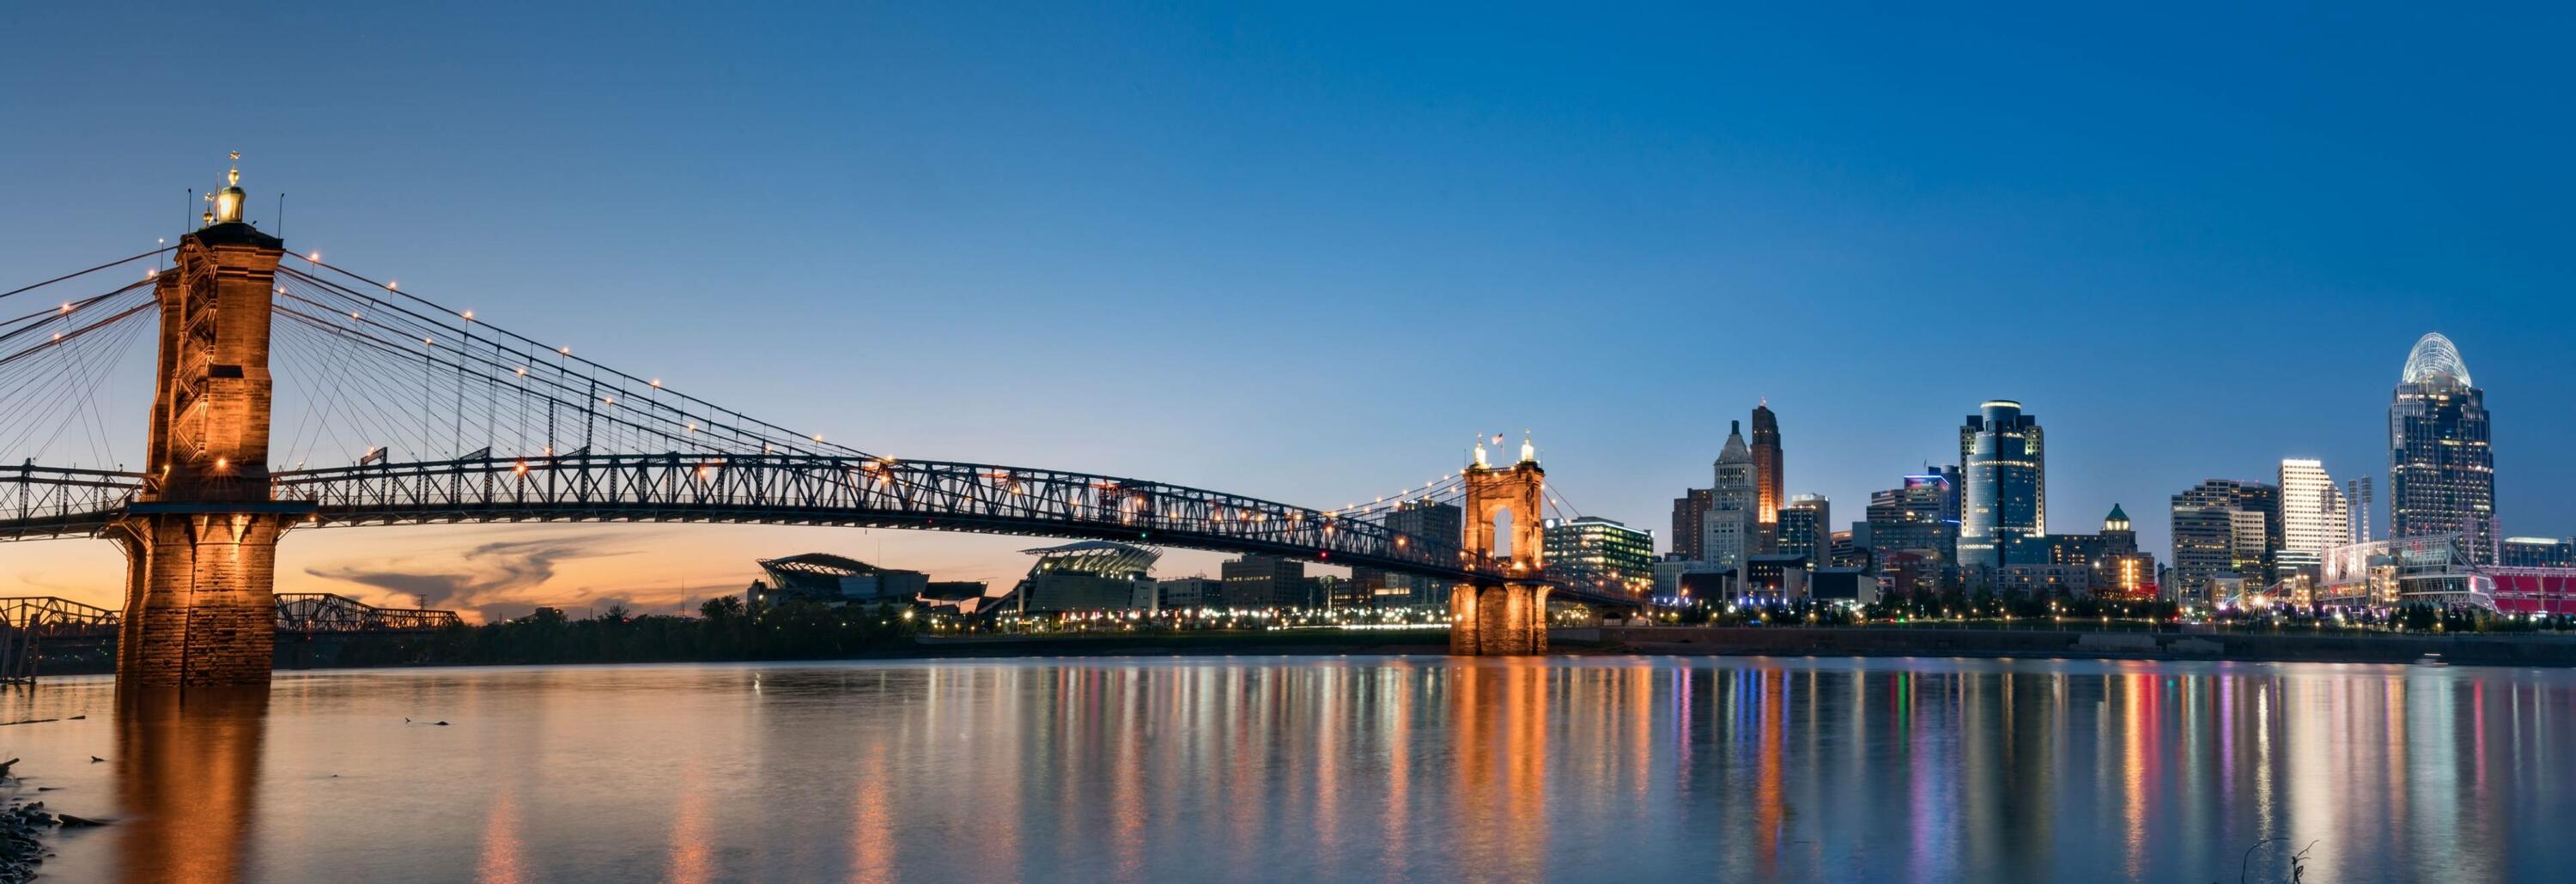 Cincinnati Ohio bridge and skyline at twilight